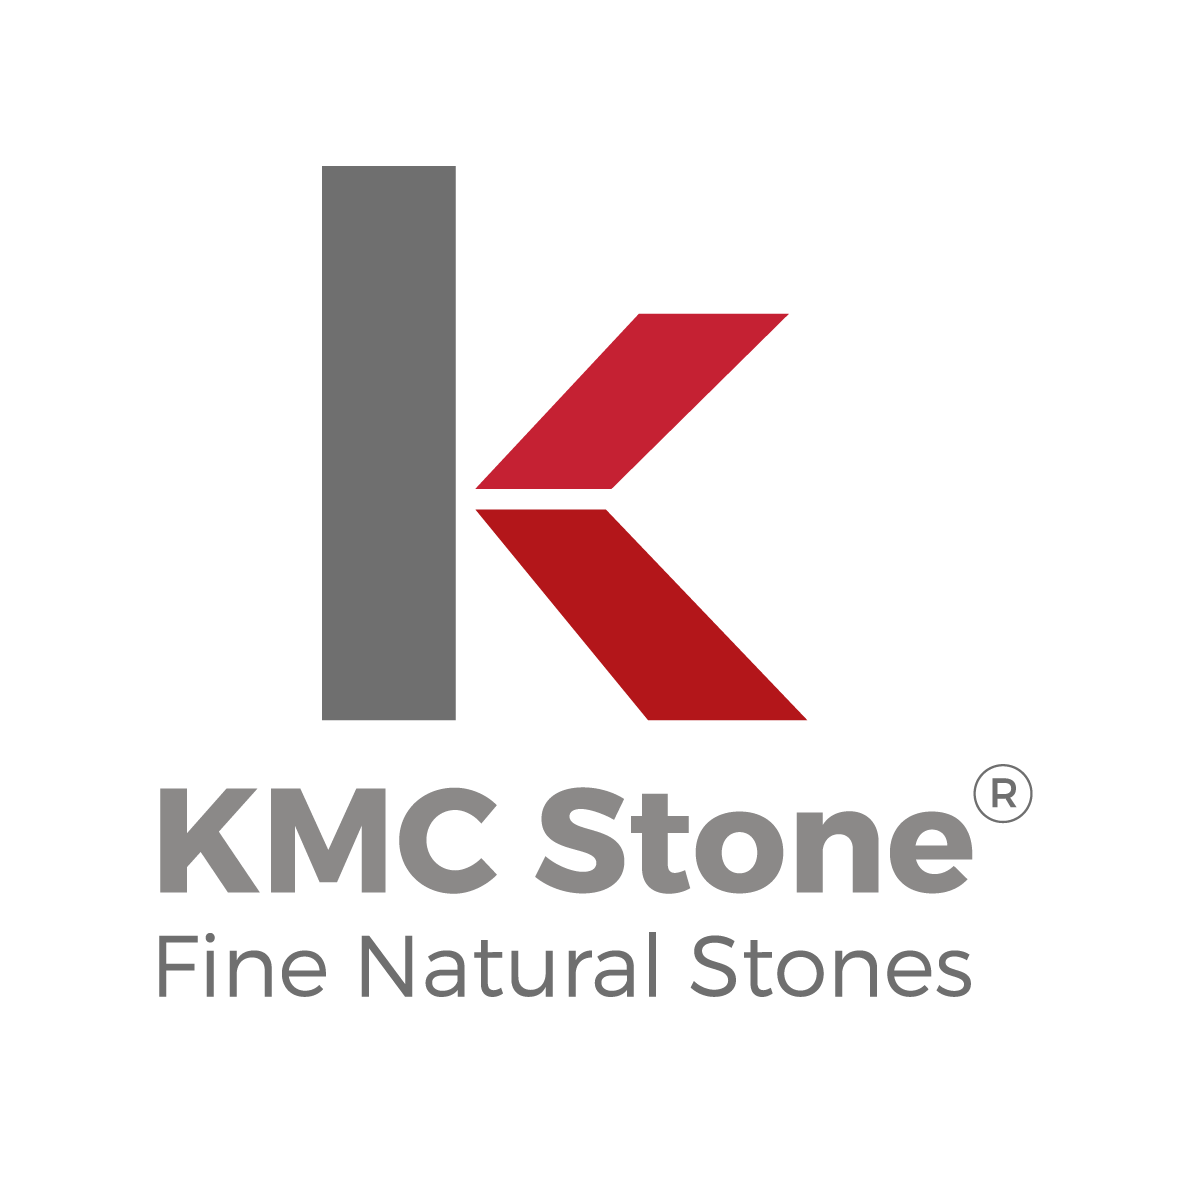 KMC Stone